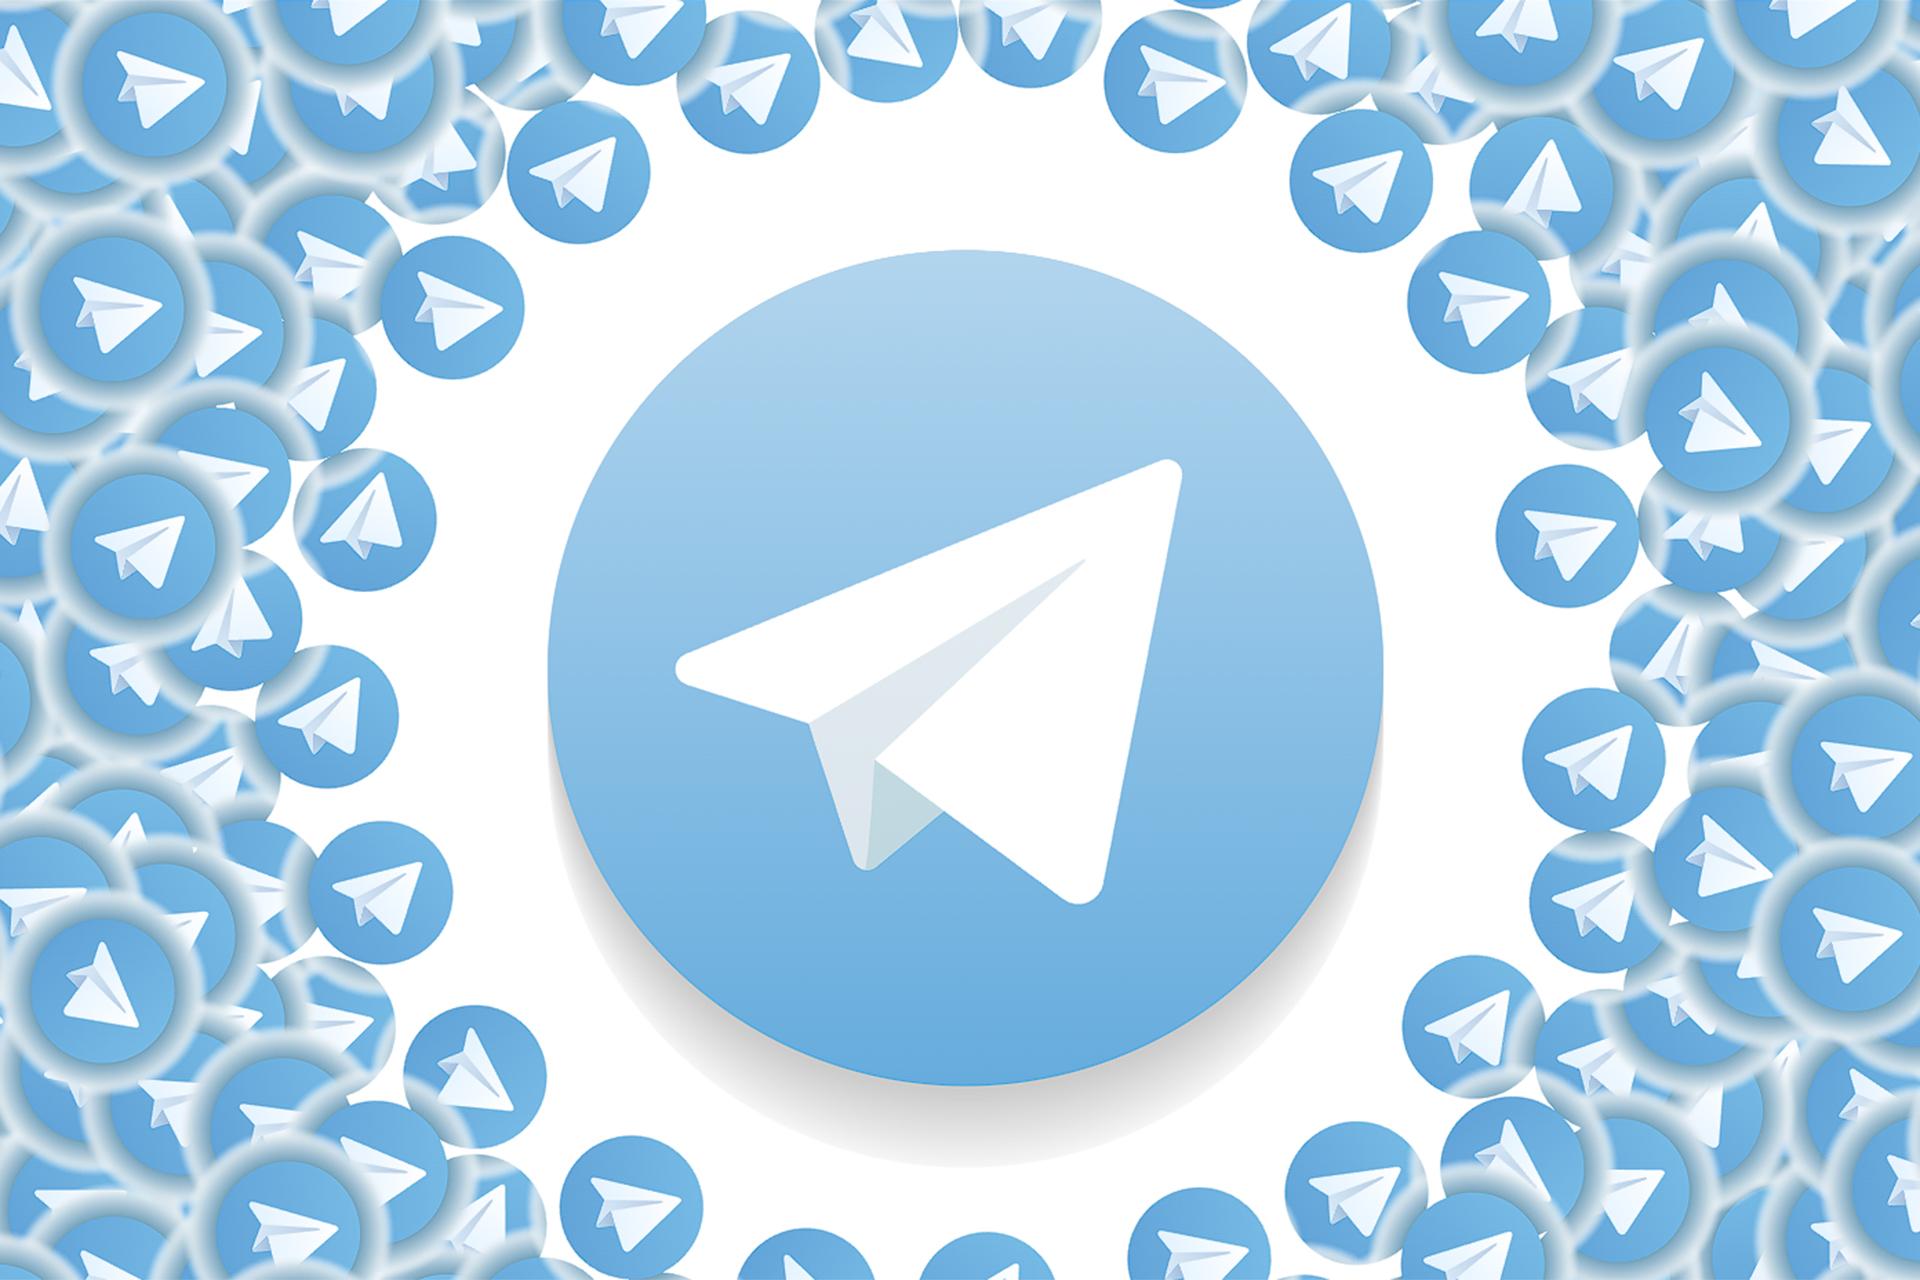 آموزش 0 تا 100 ساخت کانال تلگرام عمومی و خصوصی